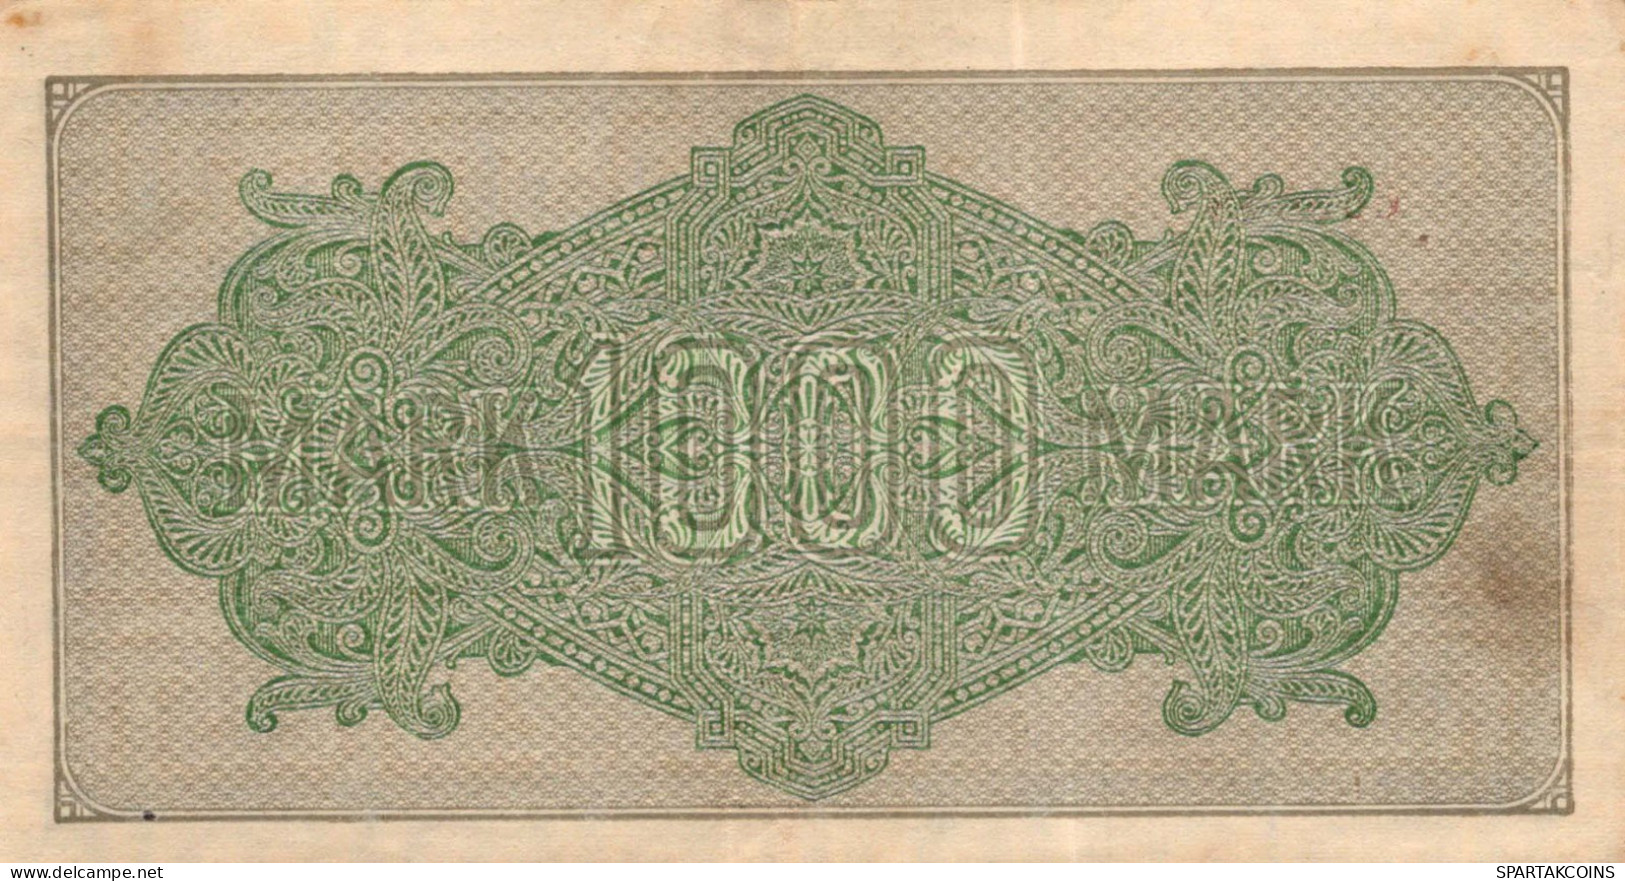 1000 MARK 1922 Stadt BERLIN DEUTSCHLAND Papiergeld Banknote #PL390 - Lokale Ausgaben